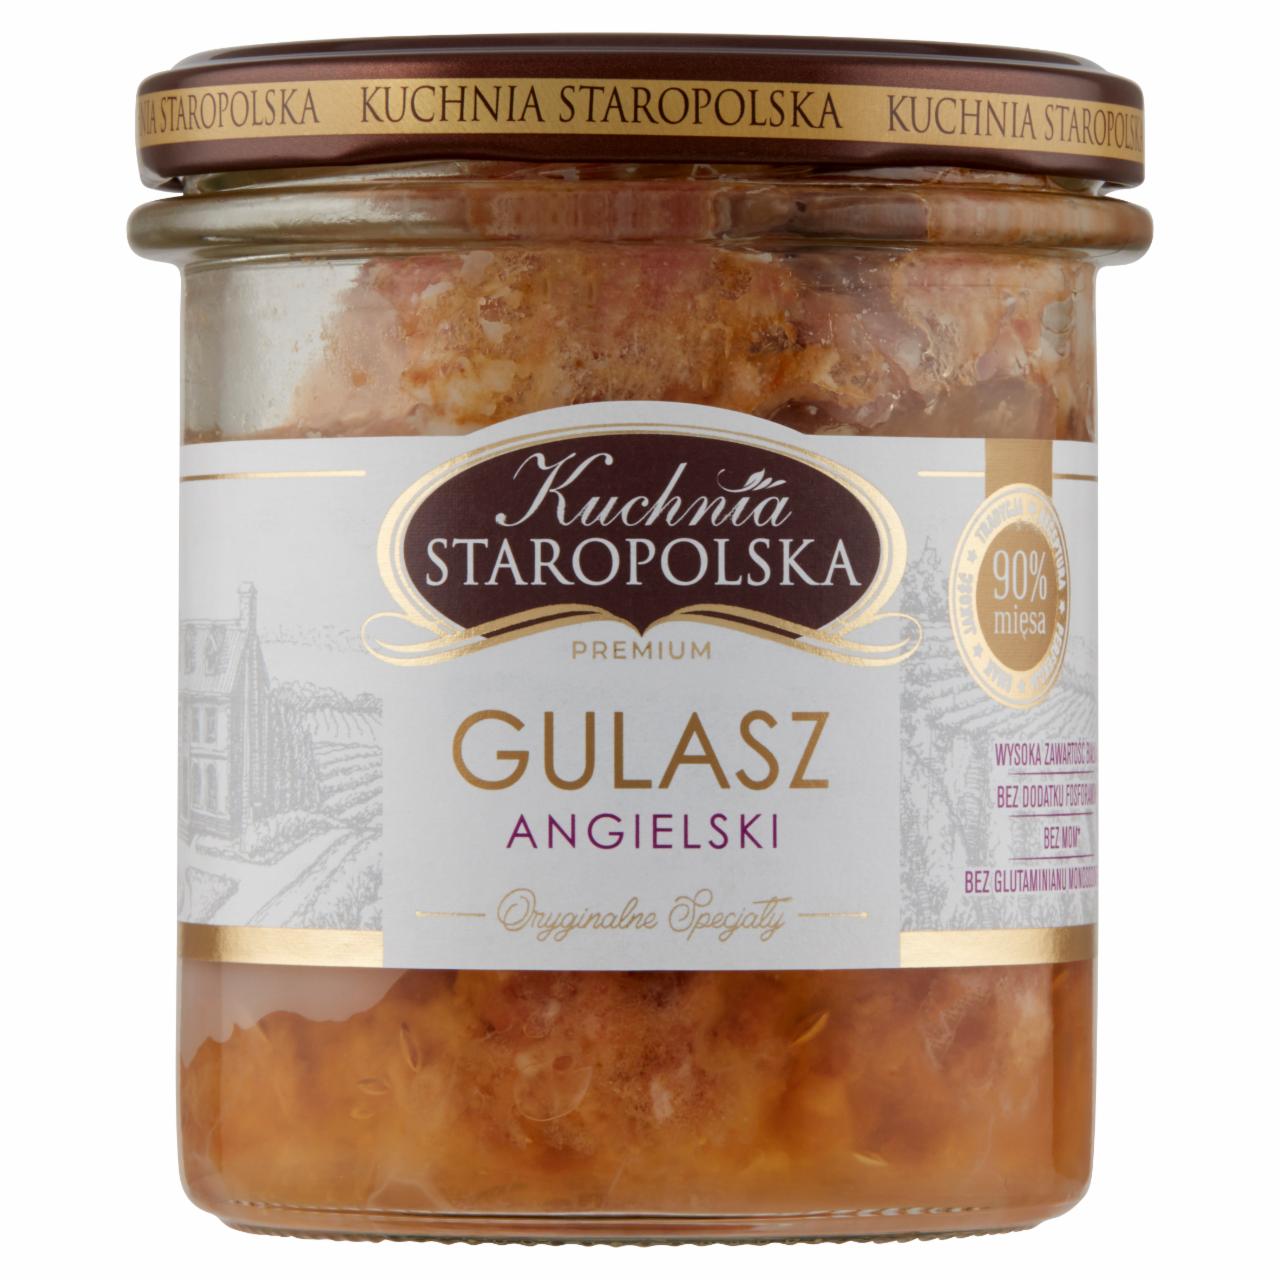 Zdjęcia - Kuchnia Staropolska Premium Gulasz angielski 300 g